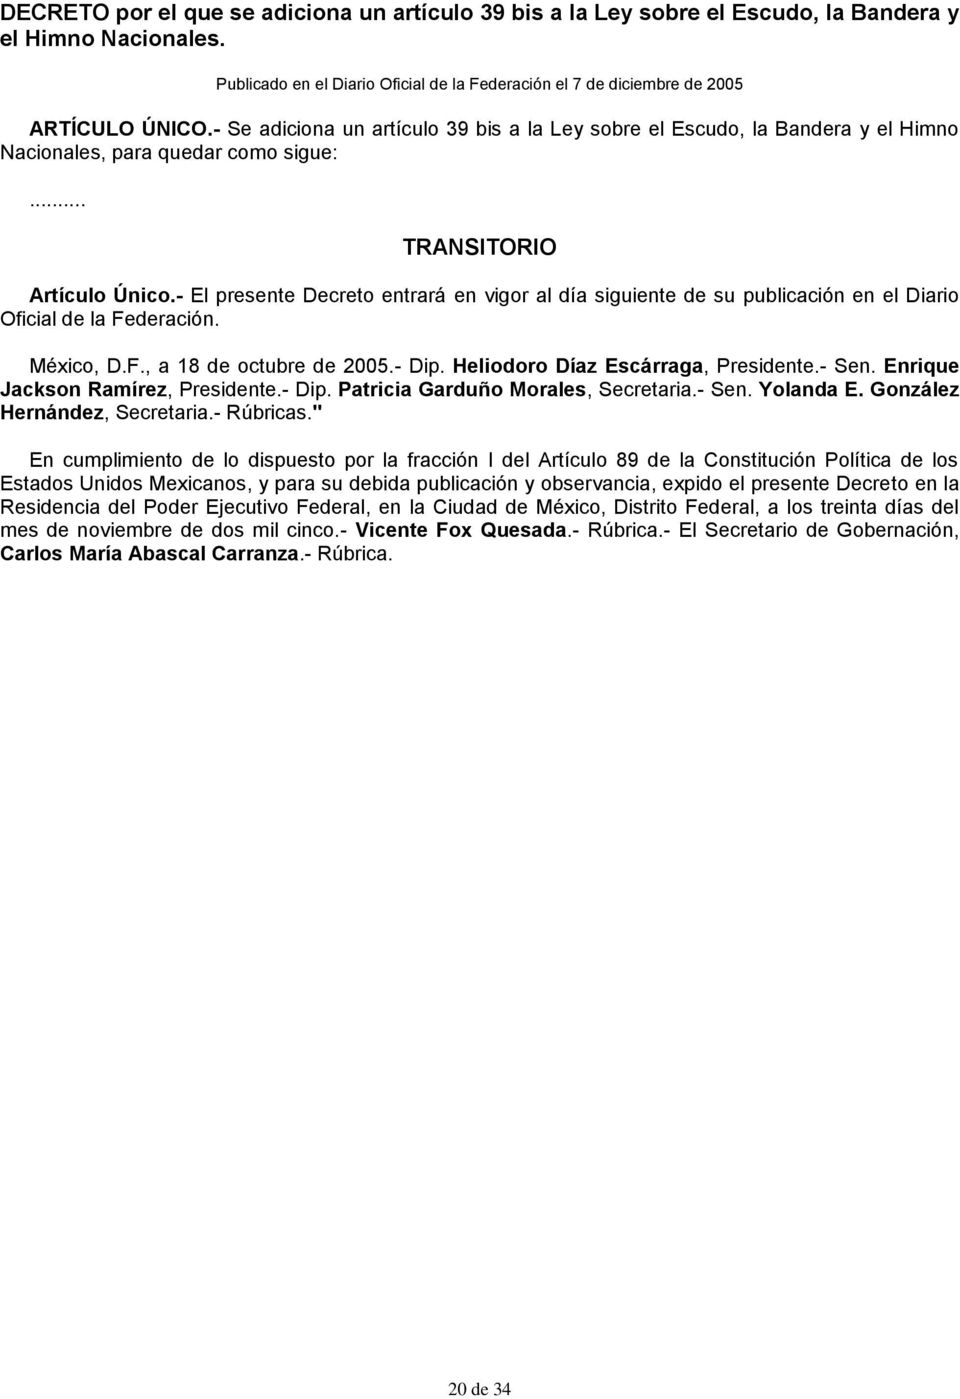 - El presente Decreto entrará en vigor al día siguiente de su publicación en el Diario Oficial de la Federación. México, D.F., a 18 de octubre de 2005.- Dip. Heliodoro Díaz Escárraga, Presidente.